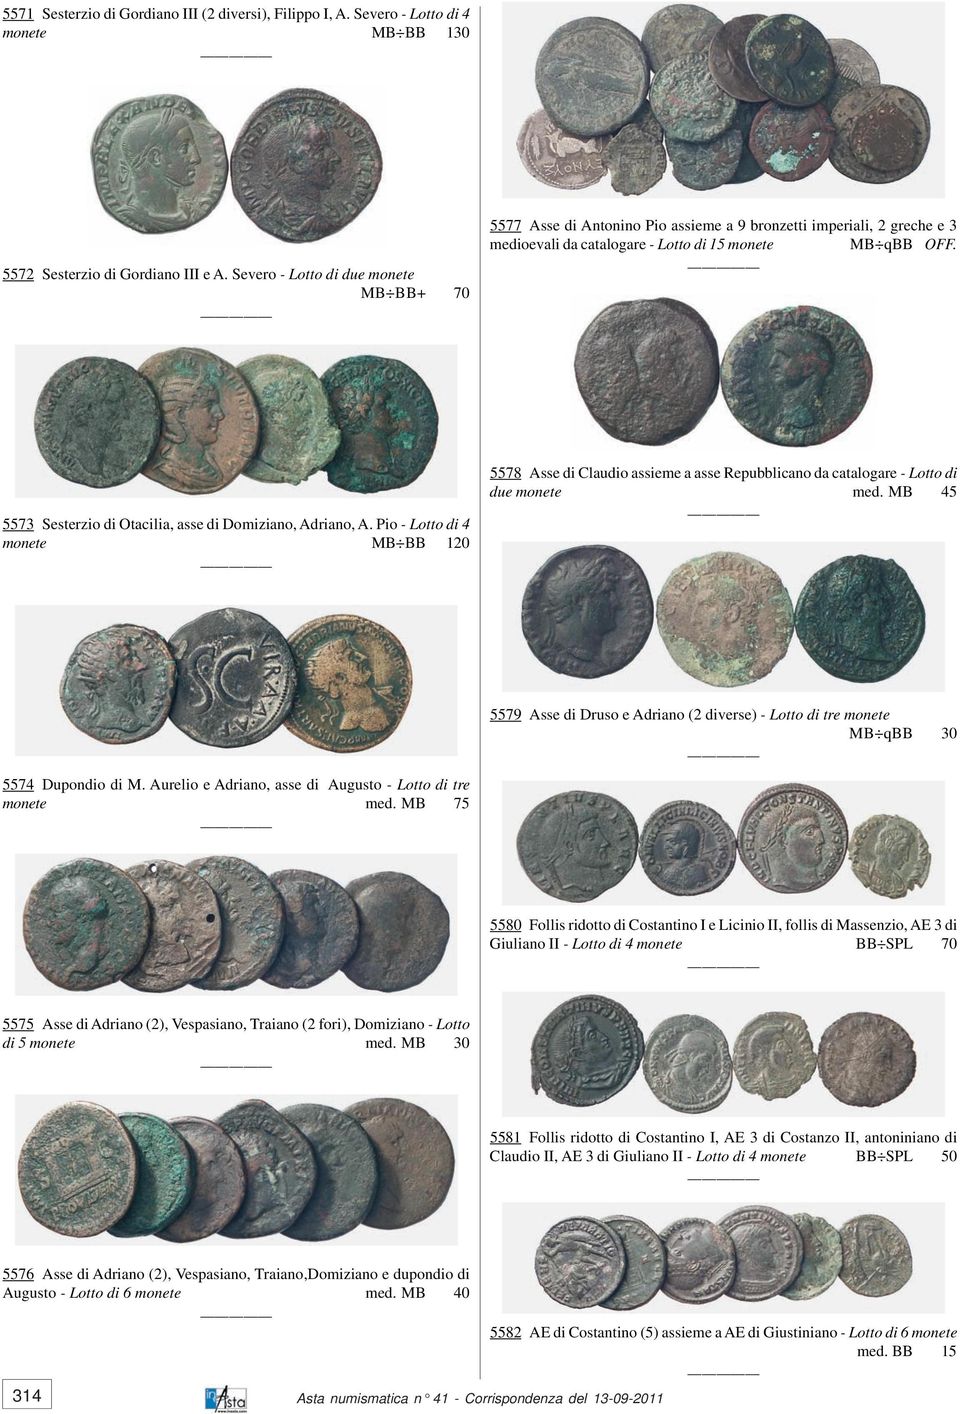 5573 Sesterzio di Otacilia, asse di Domiziano, Adriano, A. Pio - Lotto di 4 monete MB BB 120 5578 Asse di Claudio assieme a asse Repubblicano da catalogare - Lotto di due monete med.